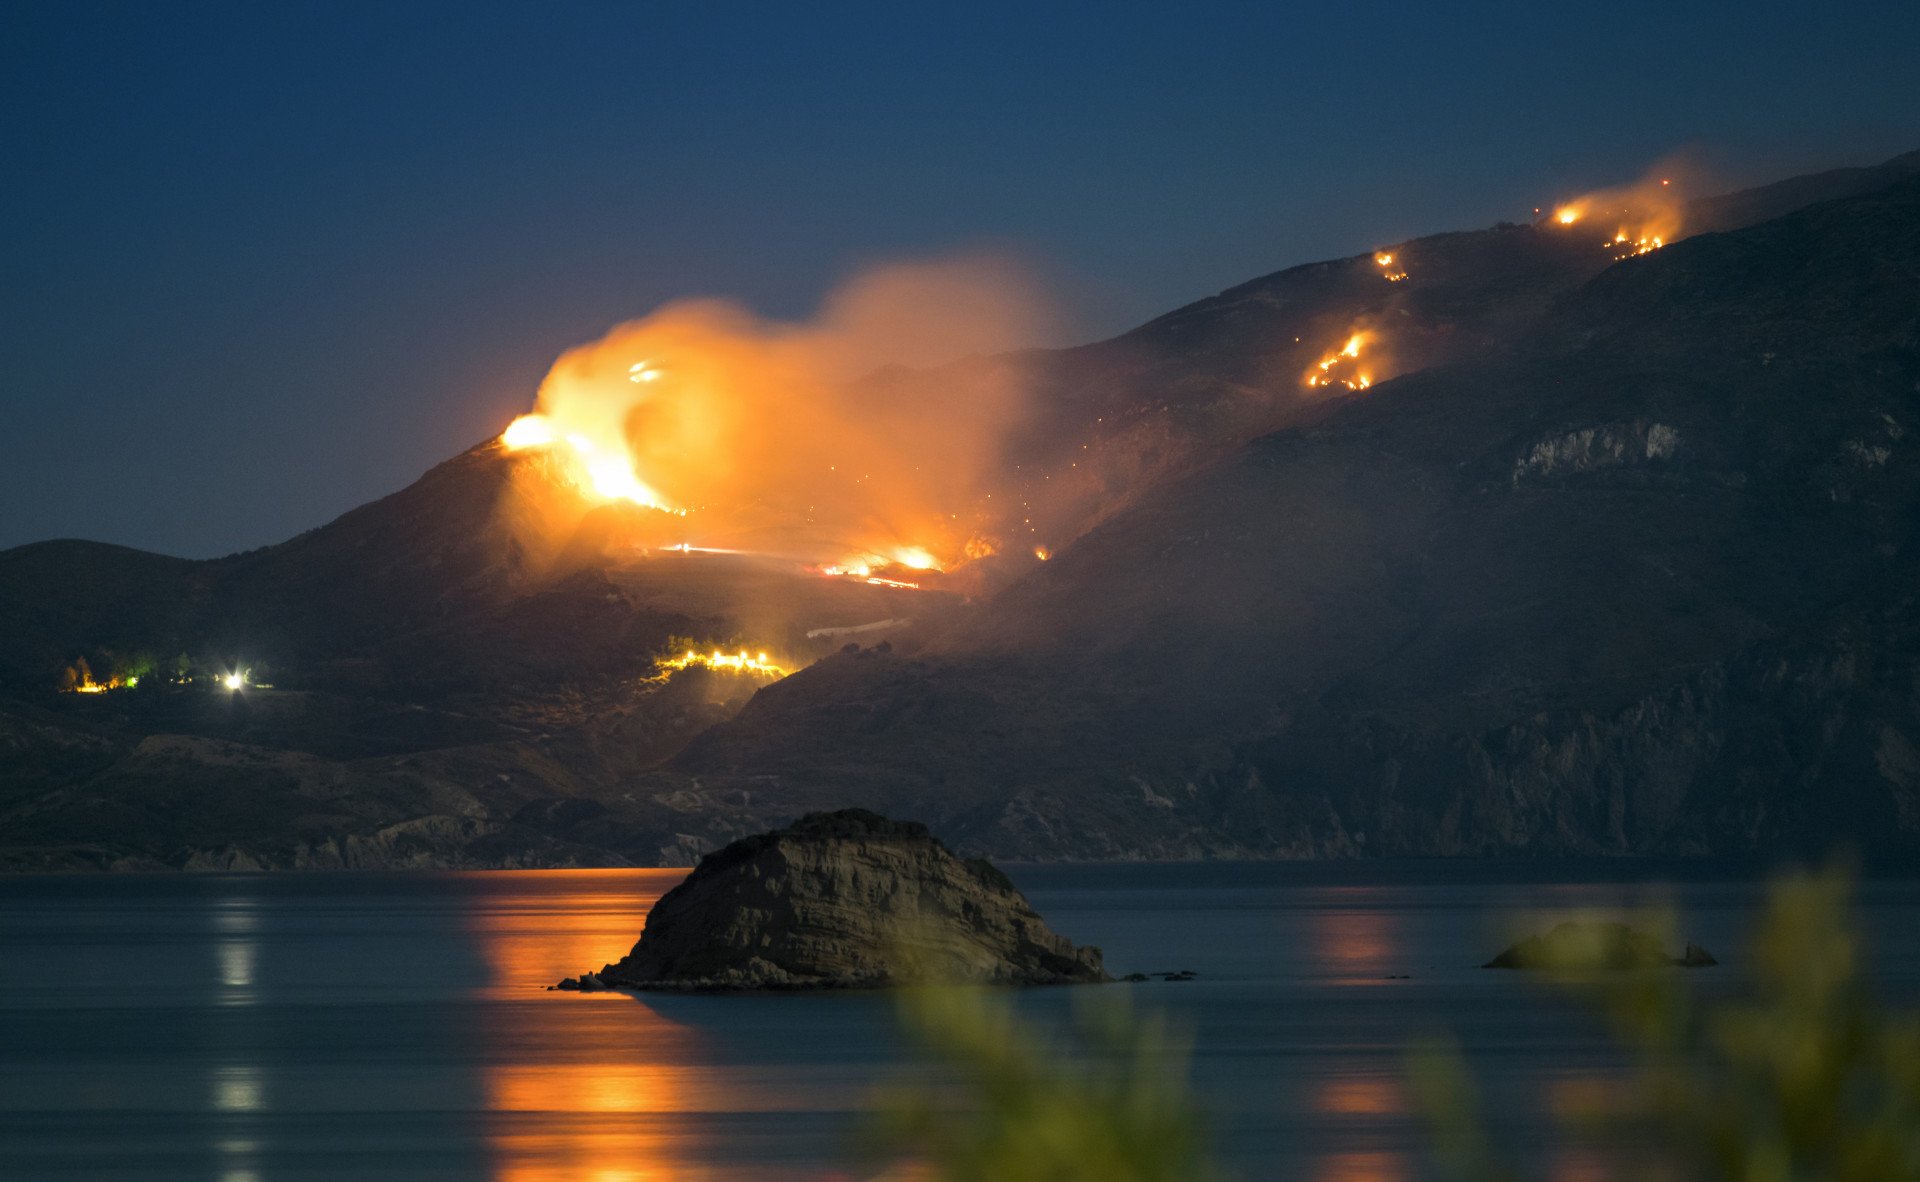  Wütender Waldbrand bei Nacht in Zakynthos, Griechenland